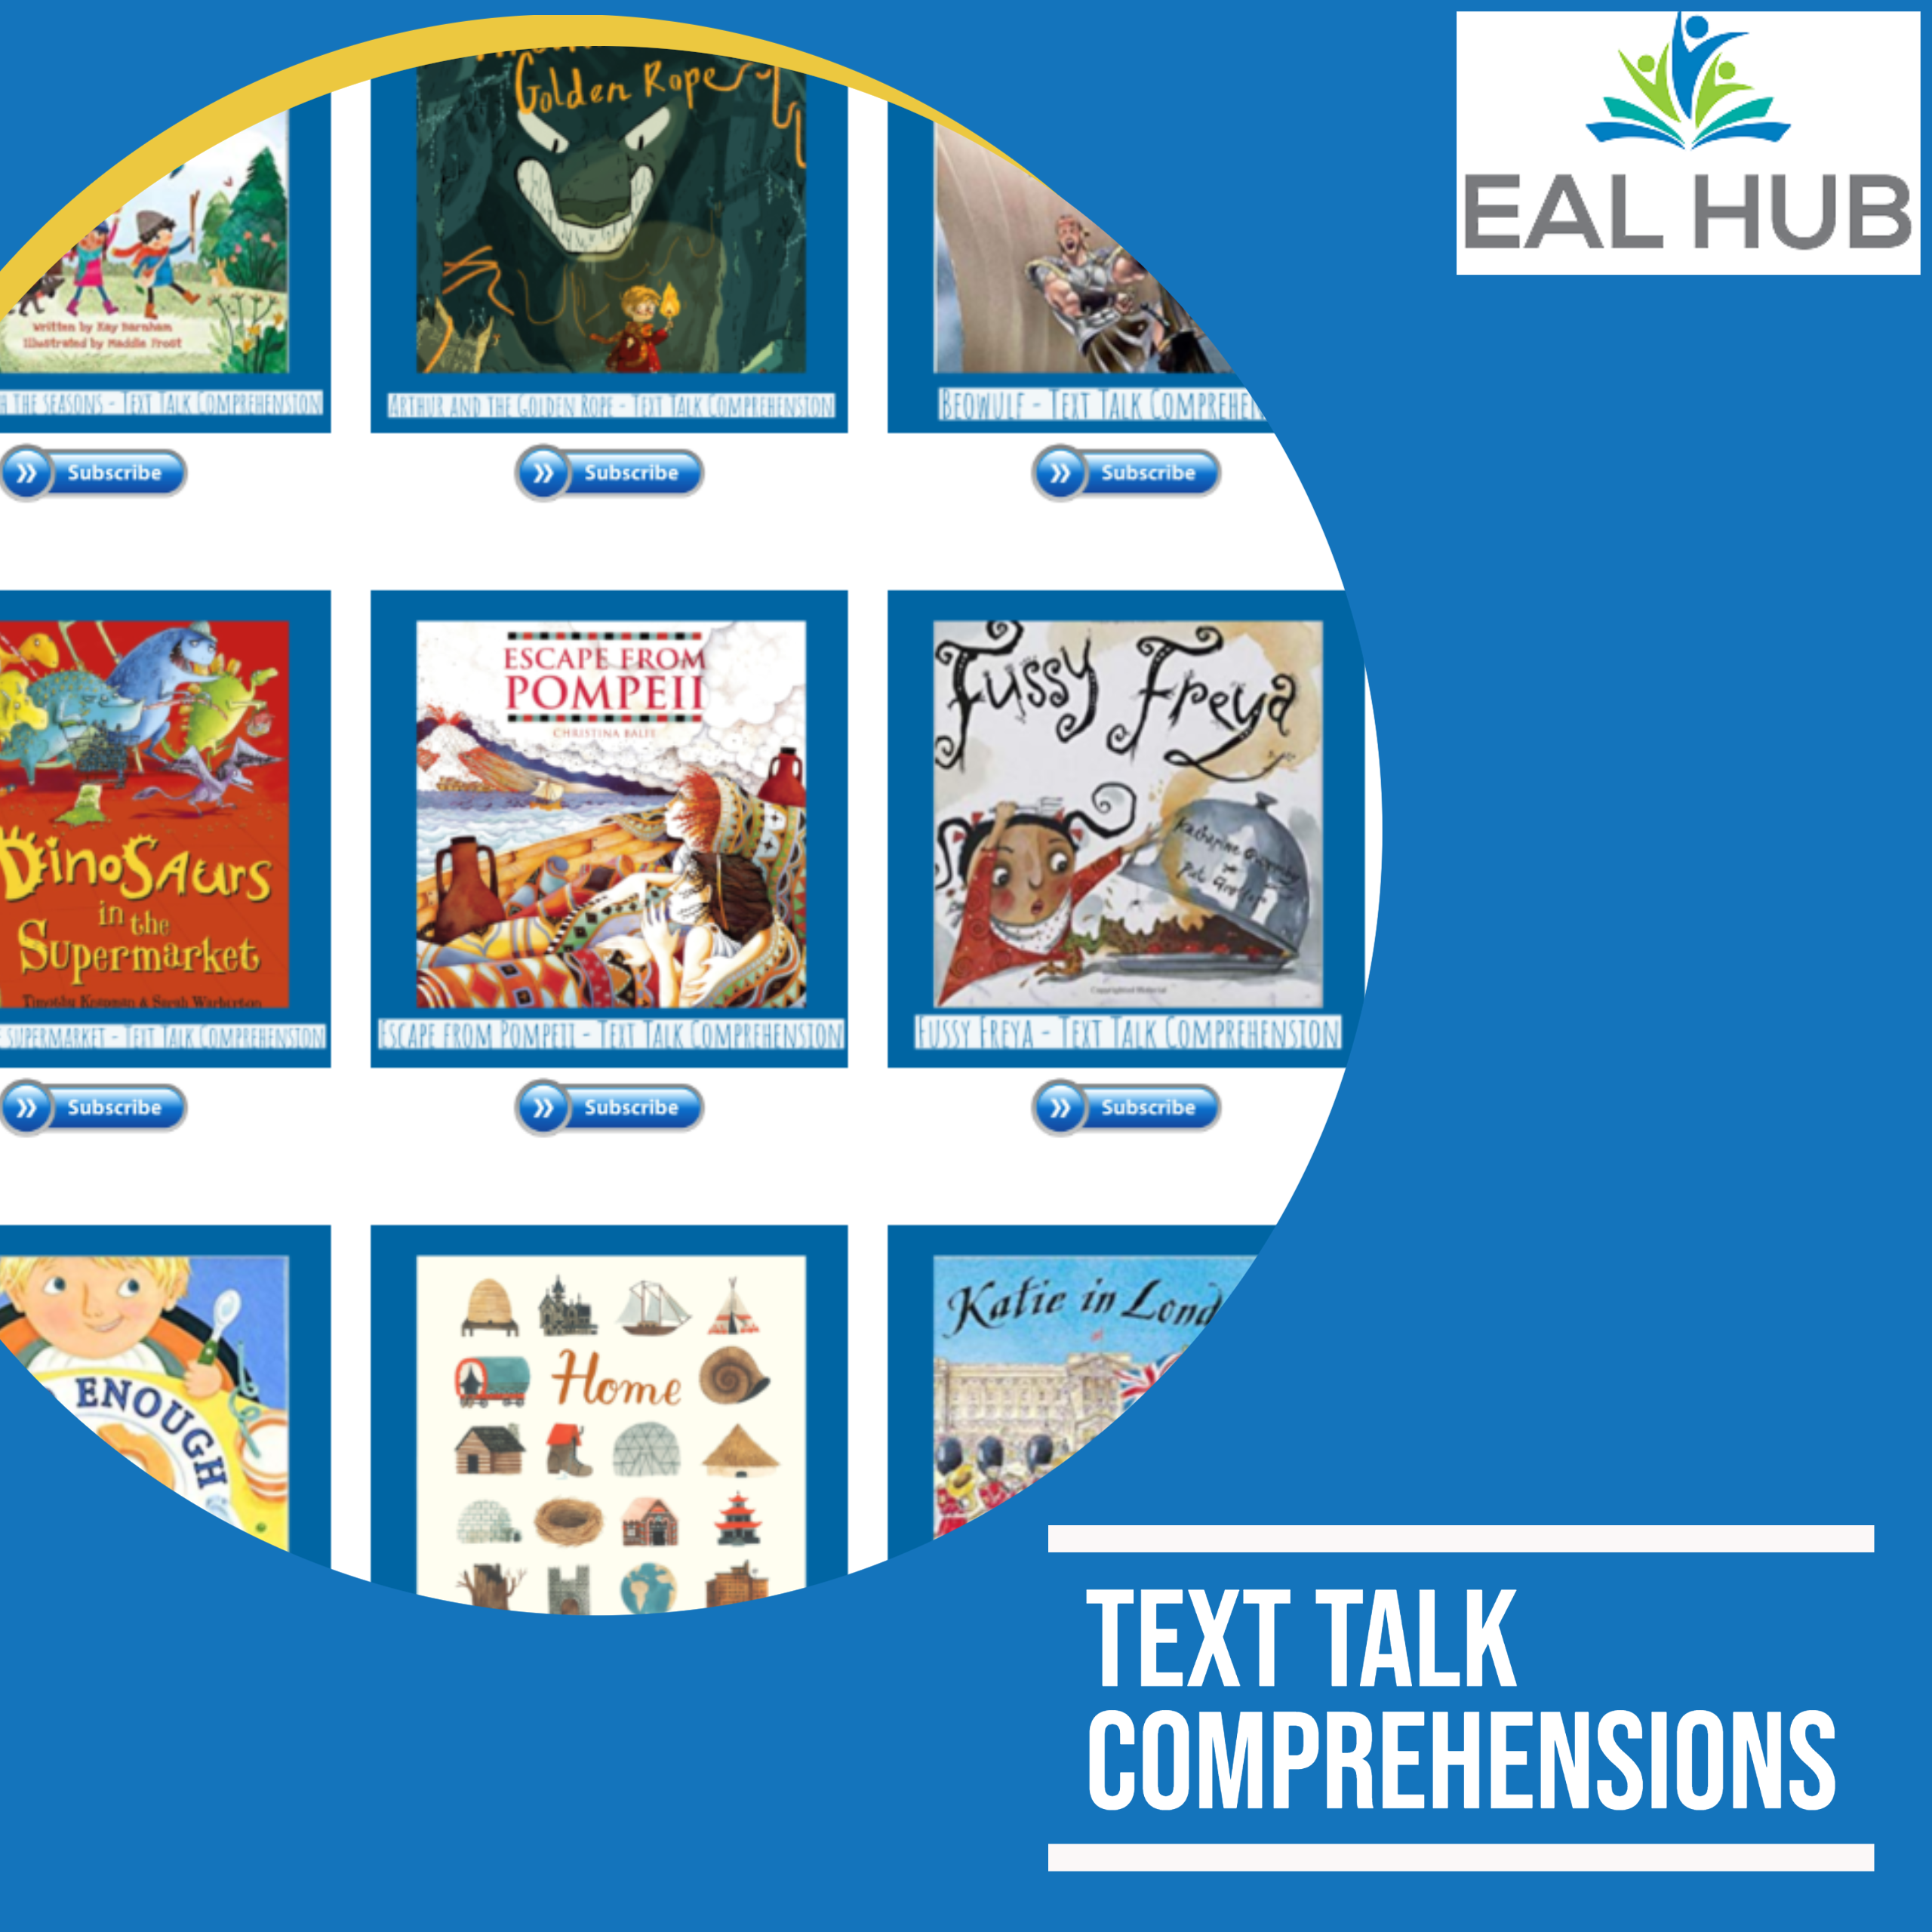 Text Talk Comprehensions